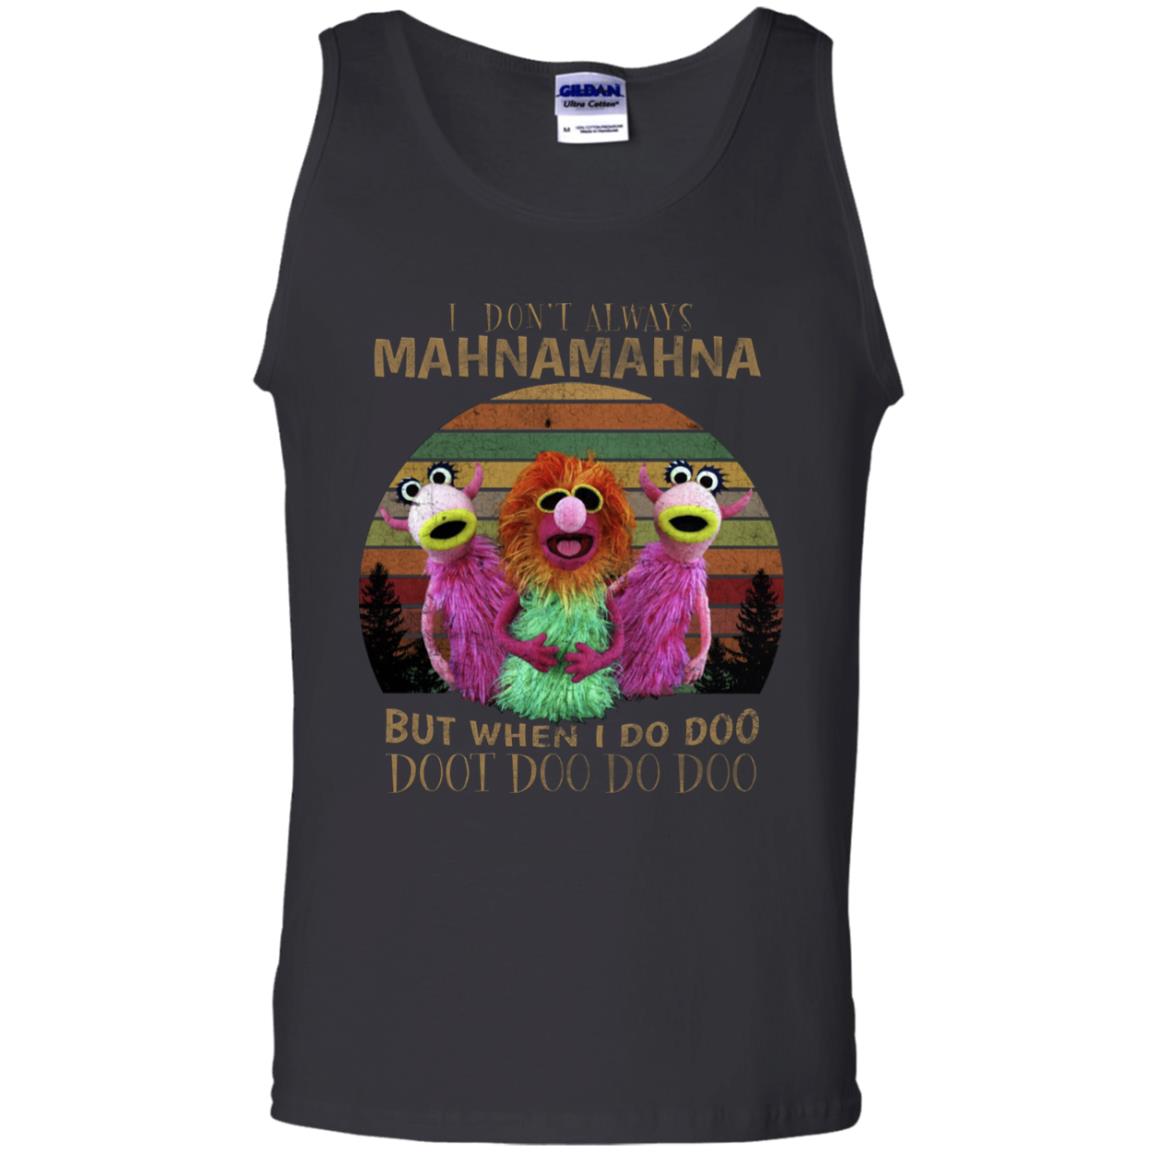 I Dont Always Mahnamahna But When I Do Doo Doot Doo Do Doo ShirtG220 Gildan 100% Cotton Tank Top